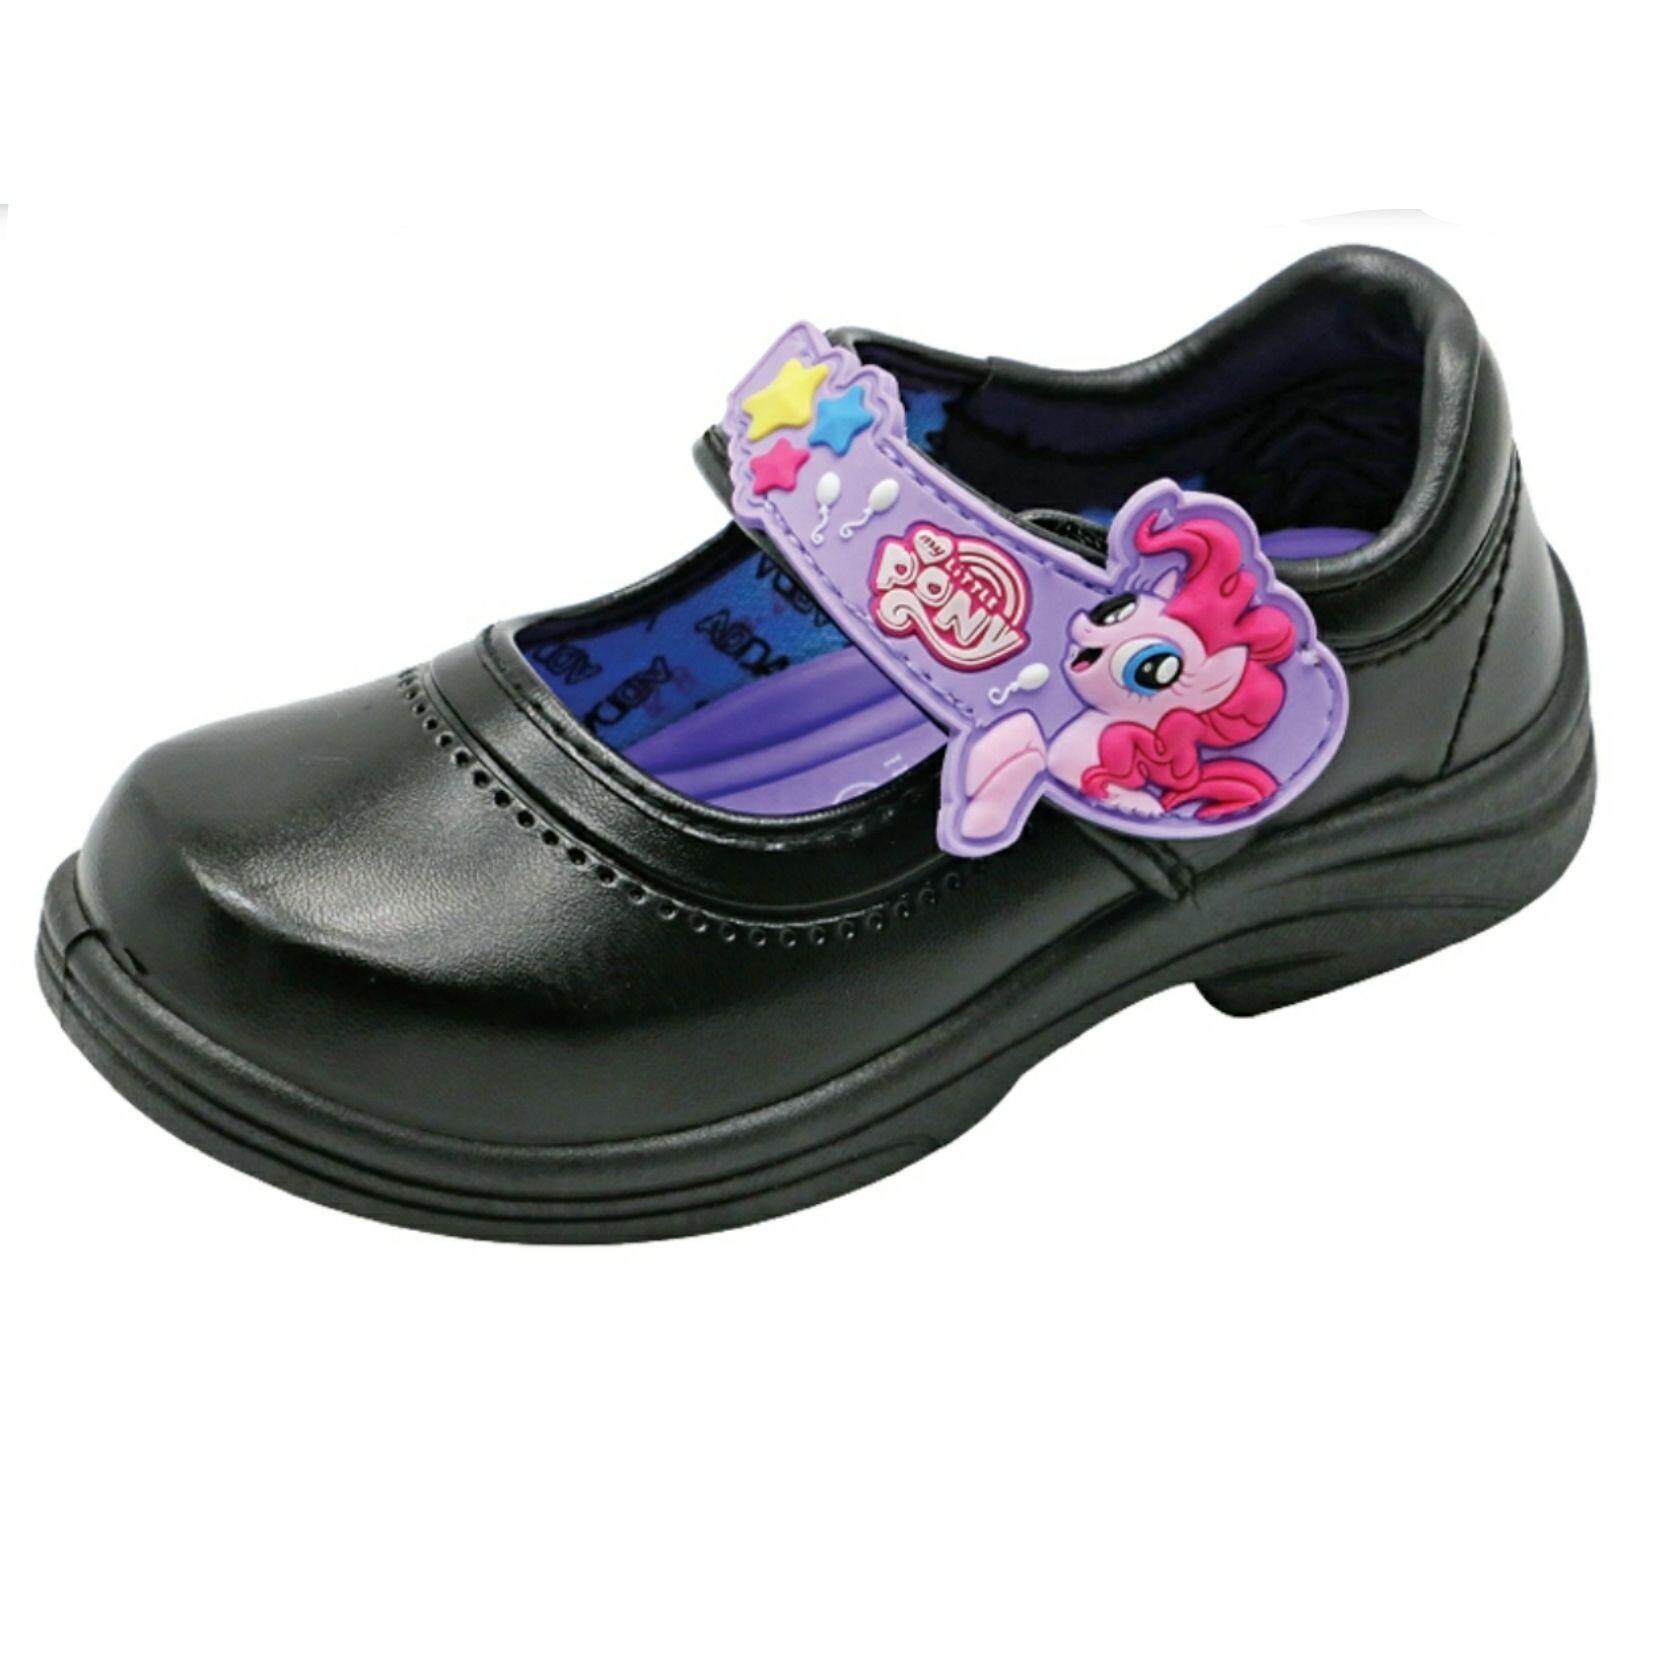 รองเท้านักเรียน ม้าน้อยโพนี่ Pony - รองเท้าหนัง สีดำ เด็กหญิง ลายการ์ตูน